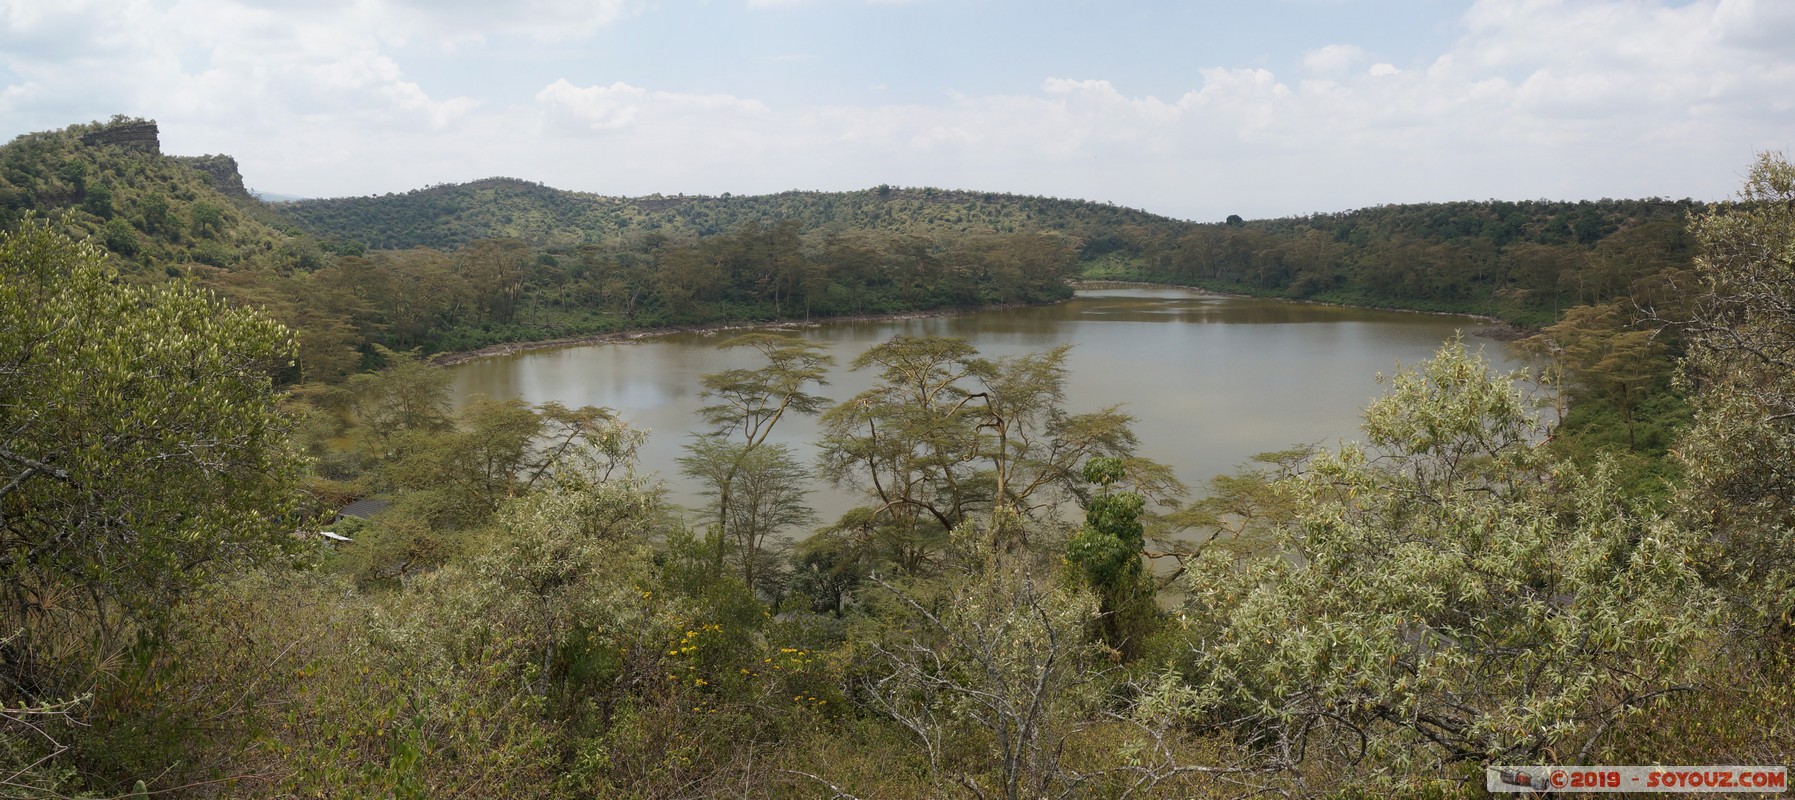 Nakuru - Crater lake - panorama
Mots-clés: KEN Kenya Lentolia Stud Nakuru Crater lake Lac panorama